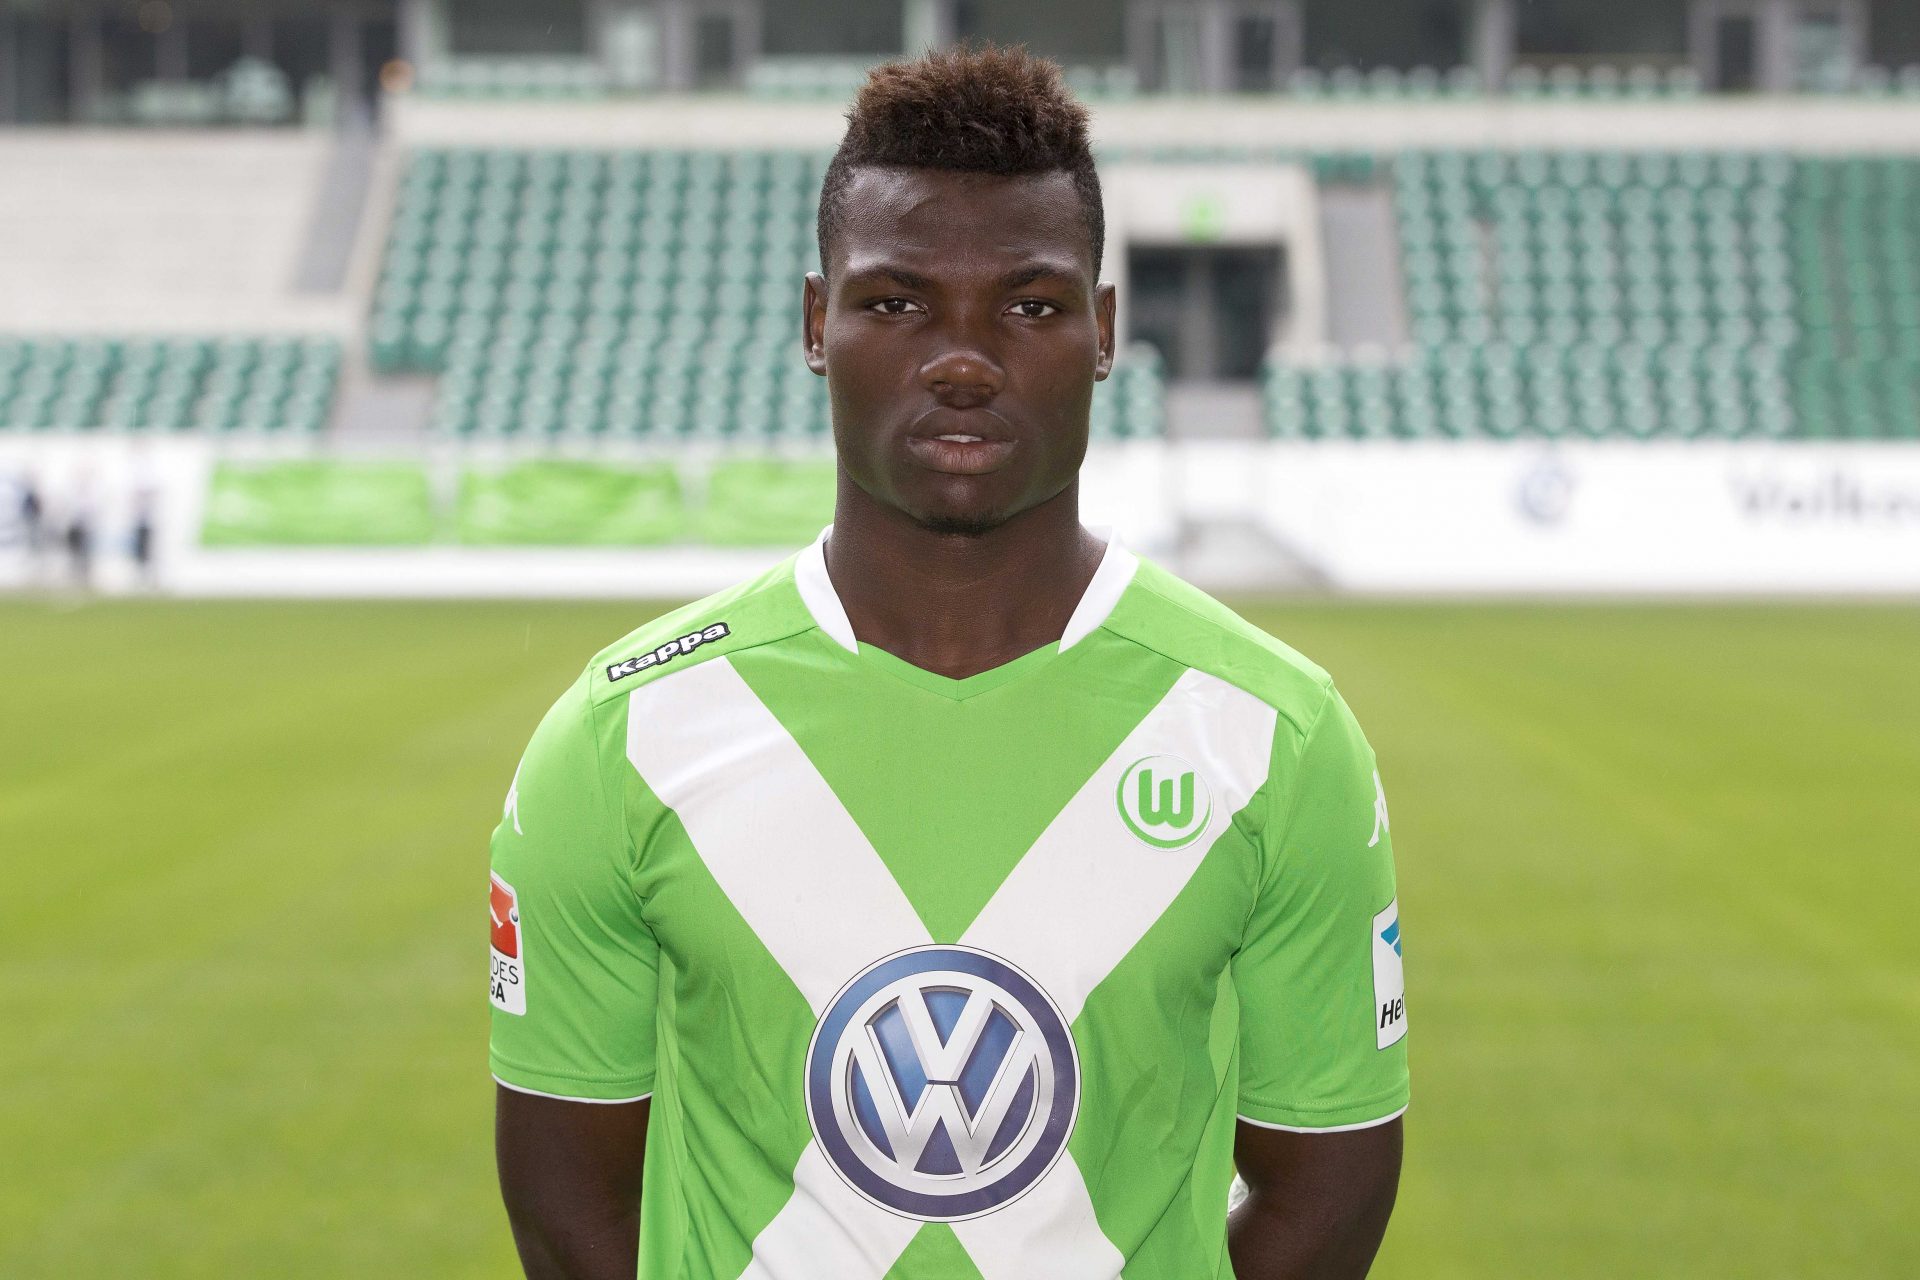 Five-year deal at VfL Wolfsburg